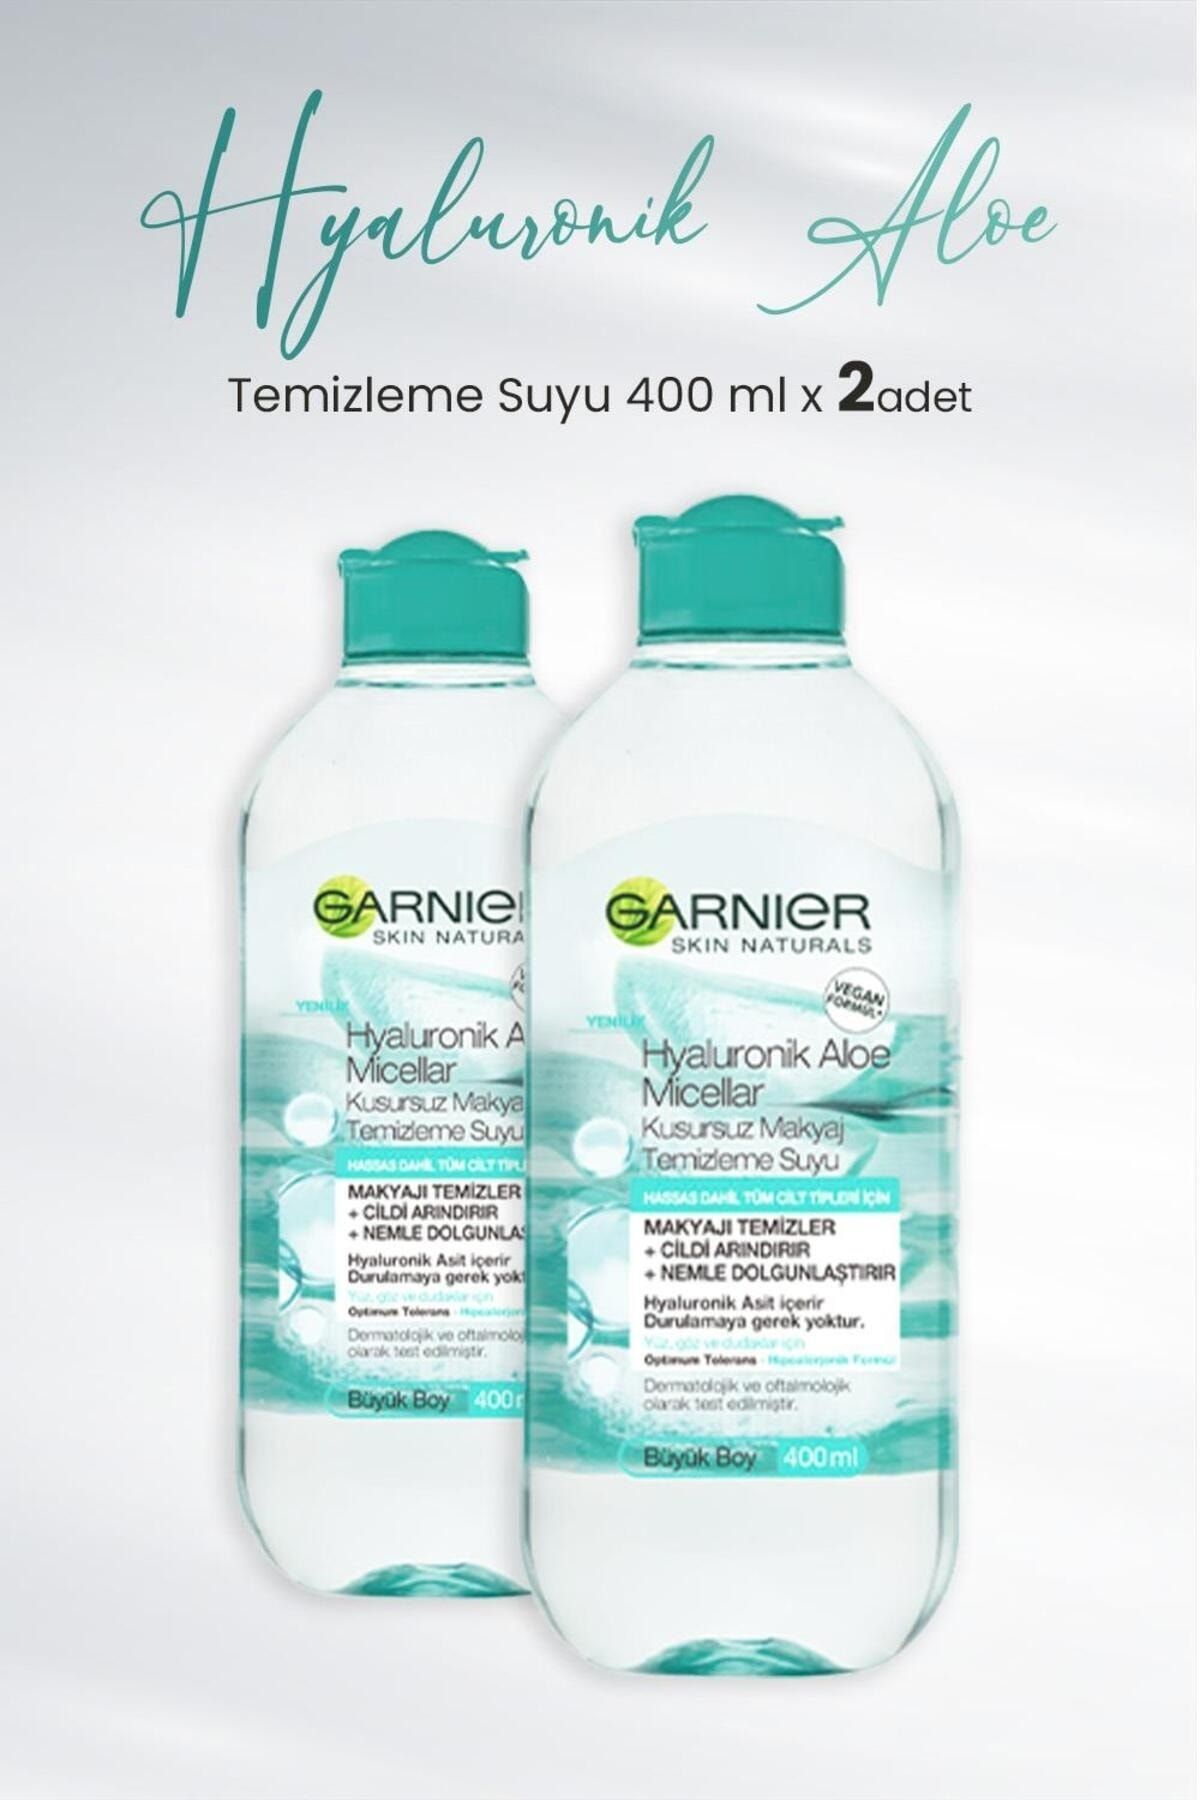 Garnier Micellar Temizleme Suyu Hyaluronik Aloe 400 ml x 2 Adet